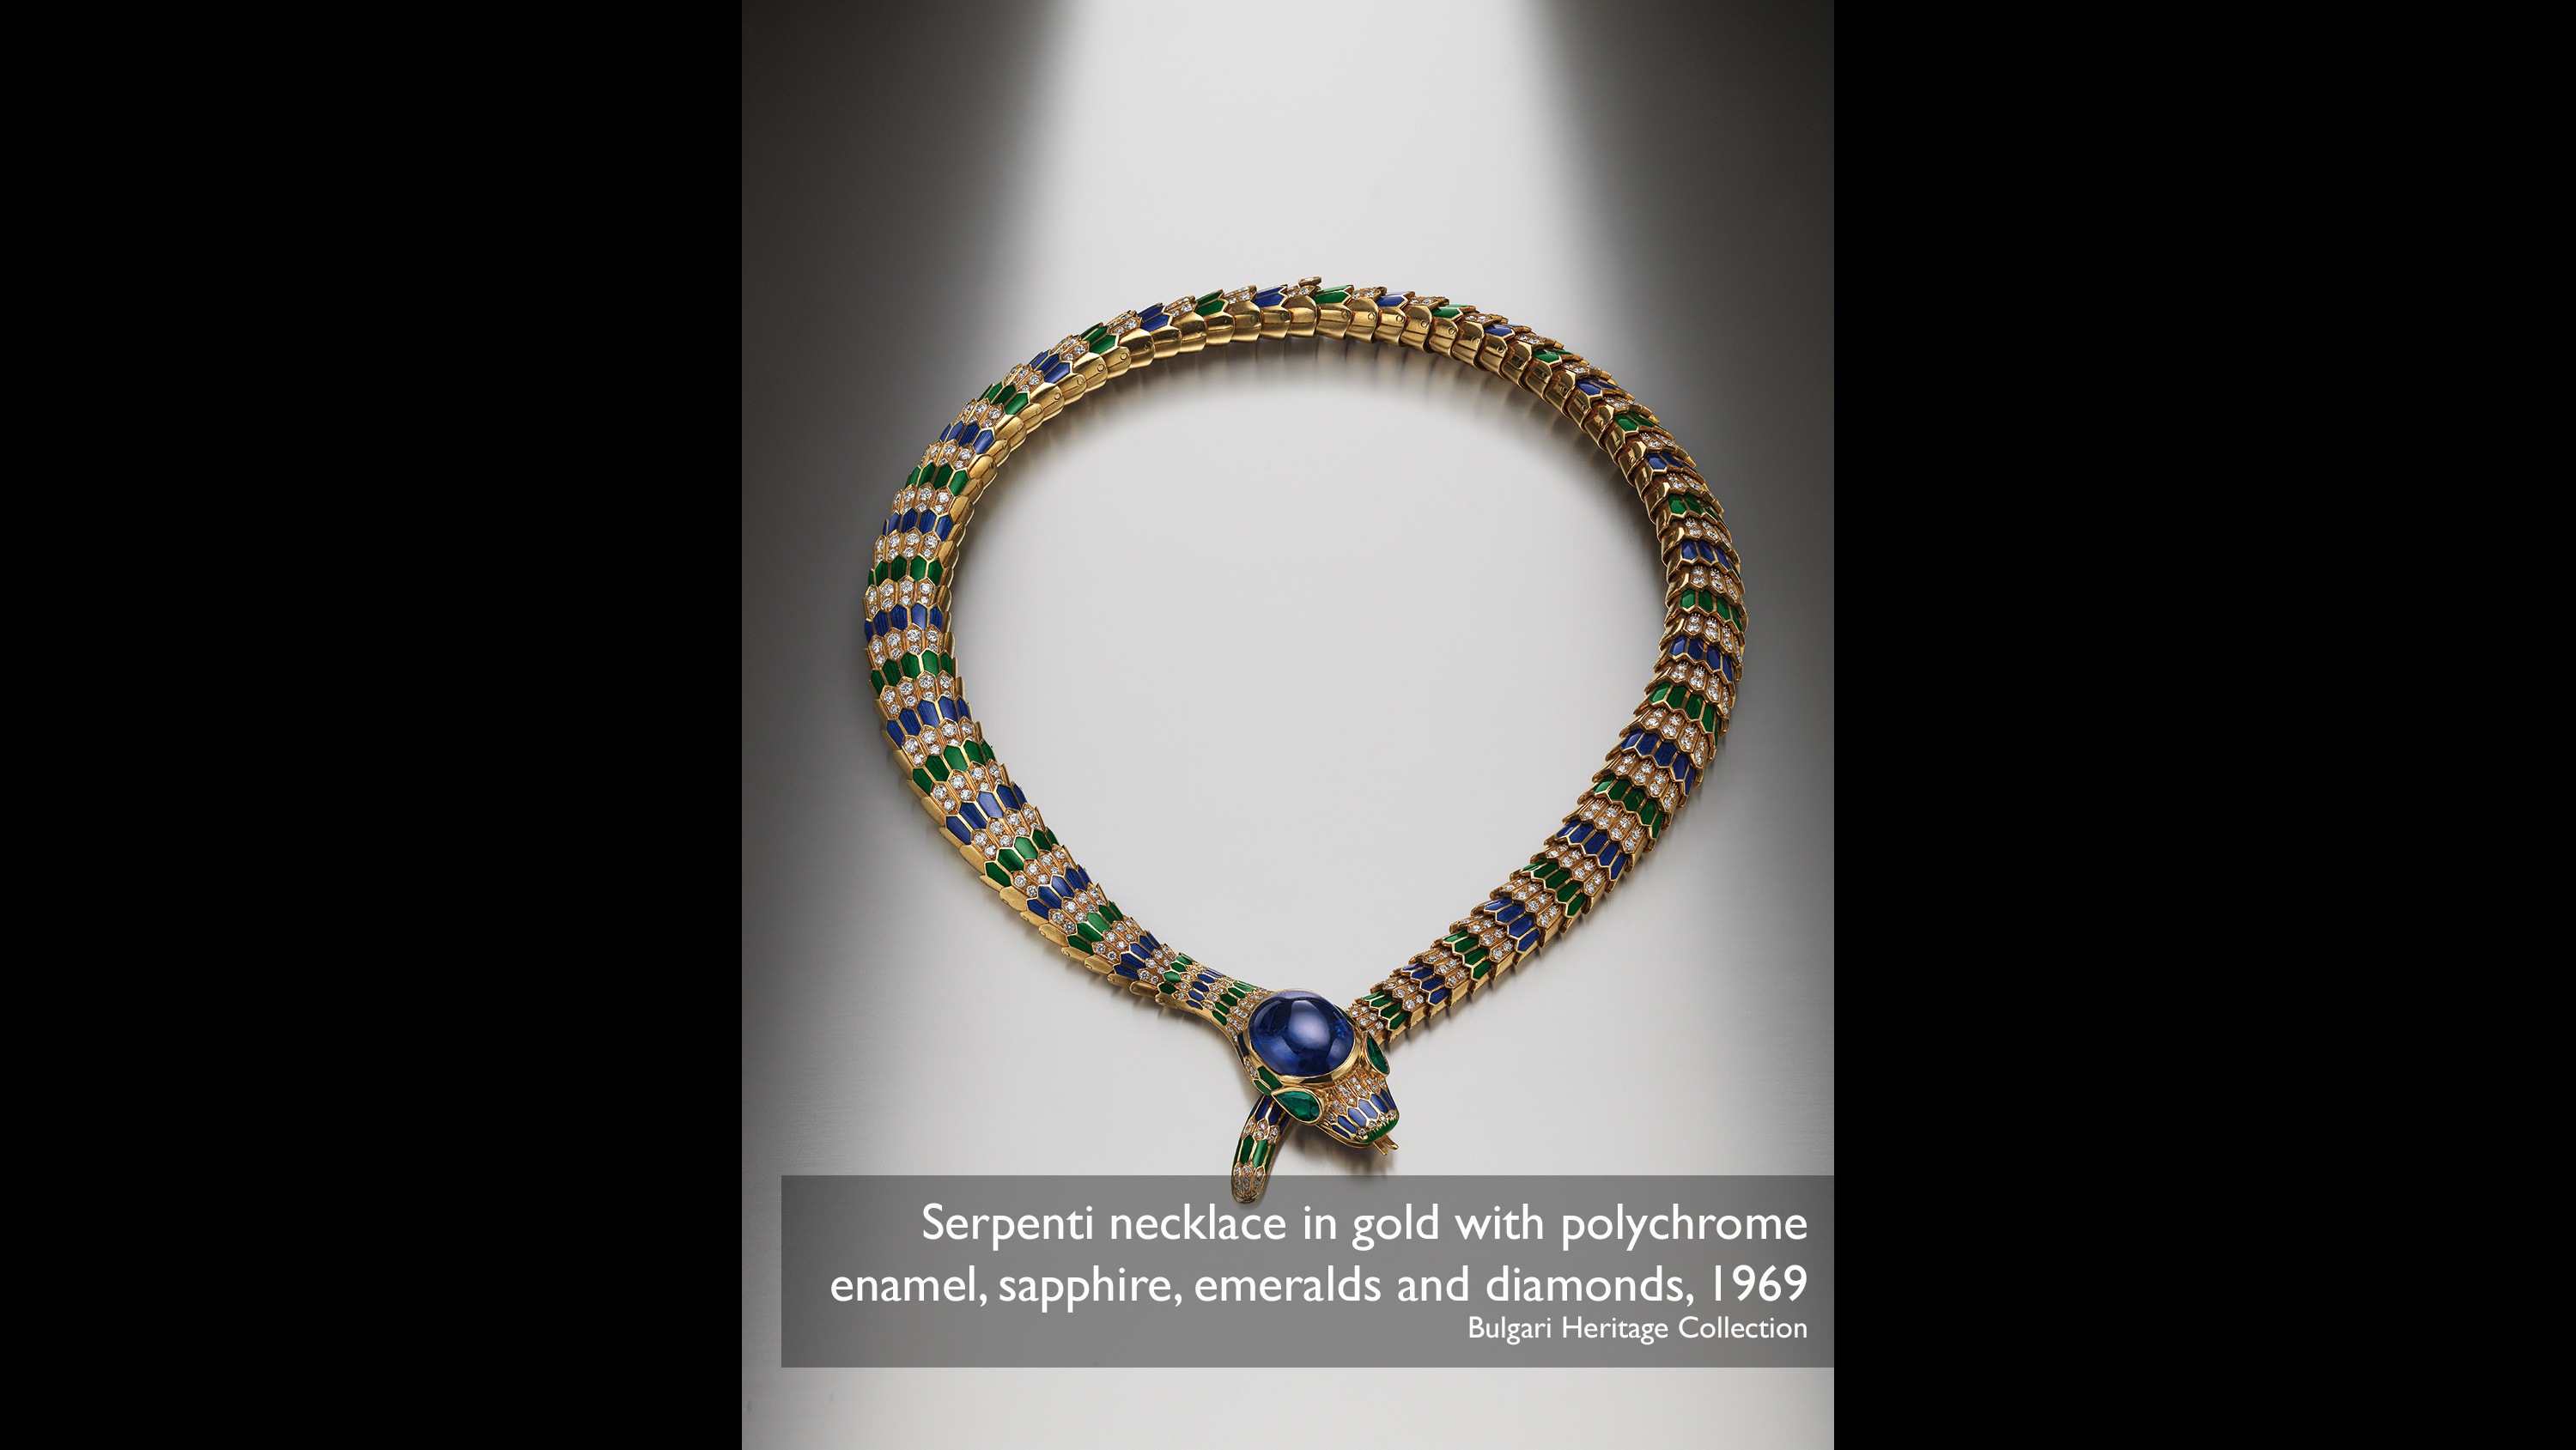 Serpentiネックレス。金と多色エナメル、サファイア、エメラルド、およびダイヤモンド、1969 Bulgari Heritage Collection